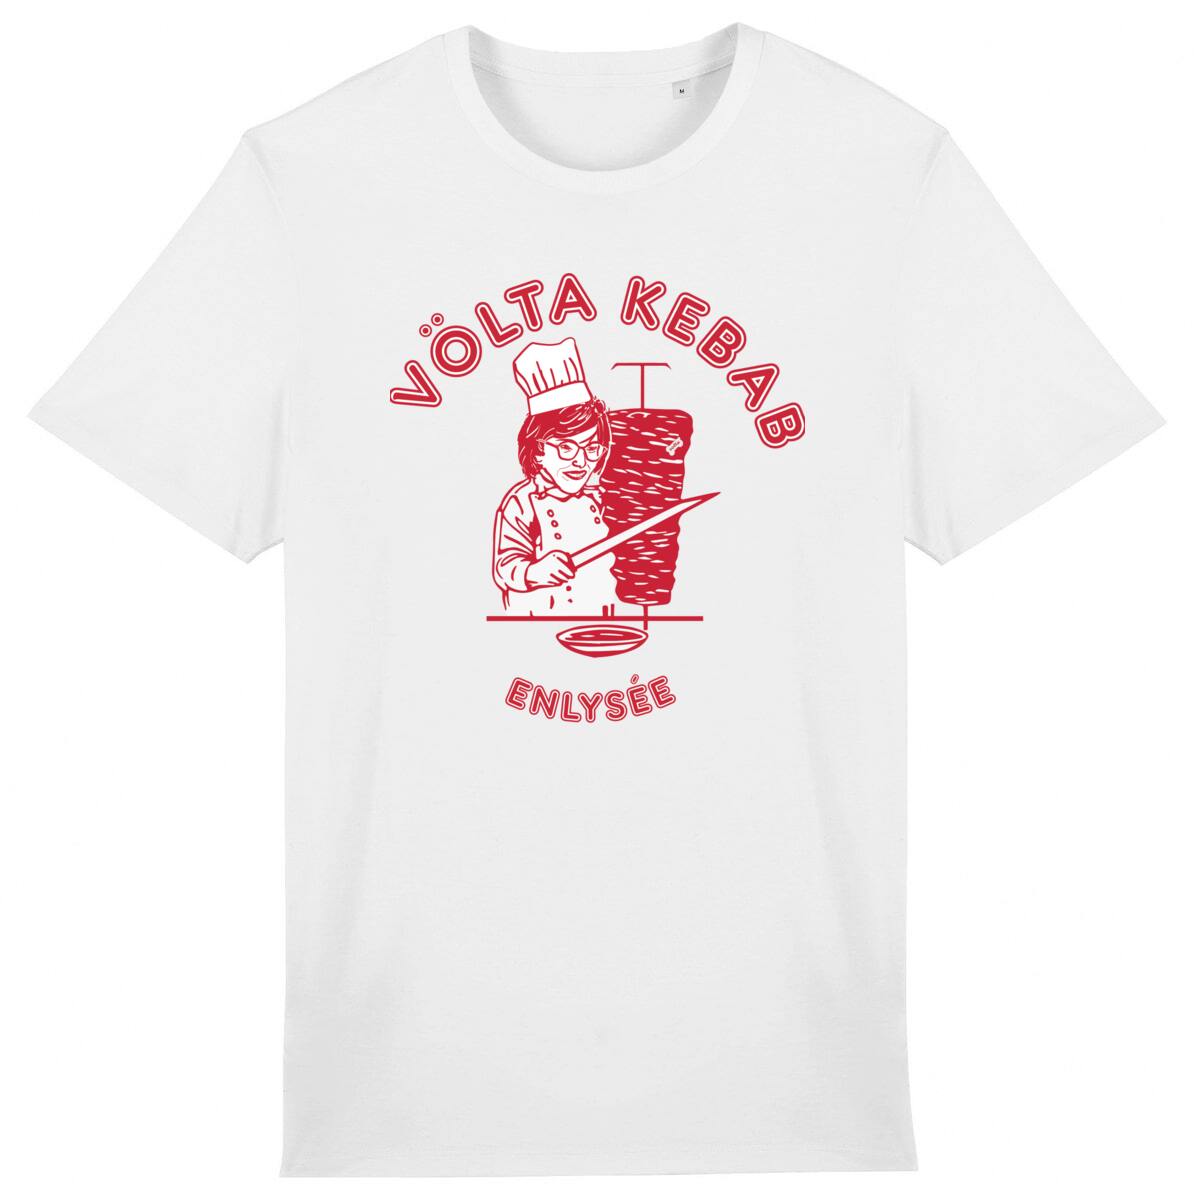 Le T-shirt Völta Kebab